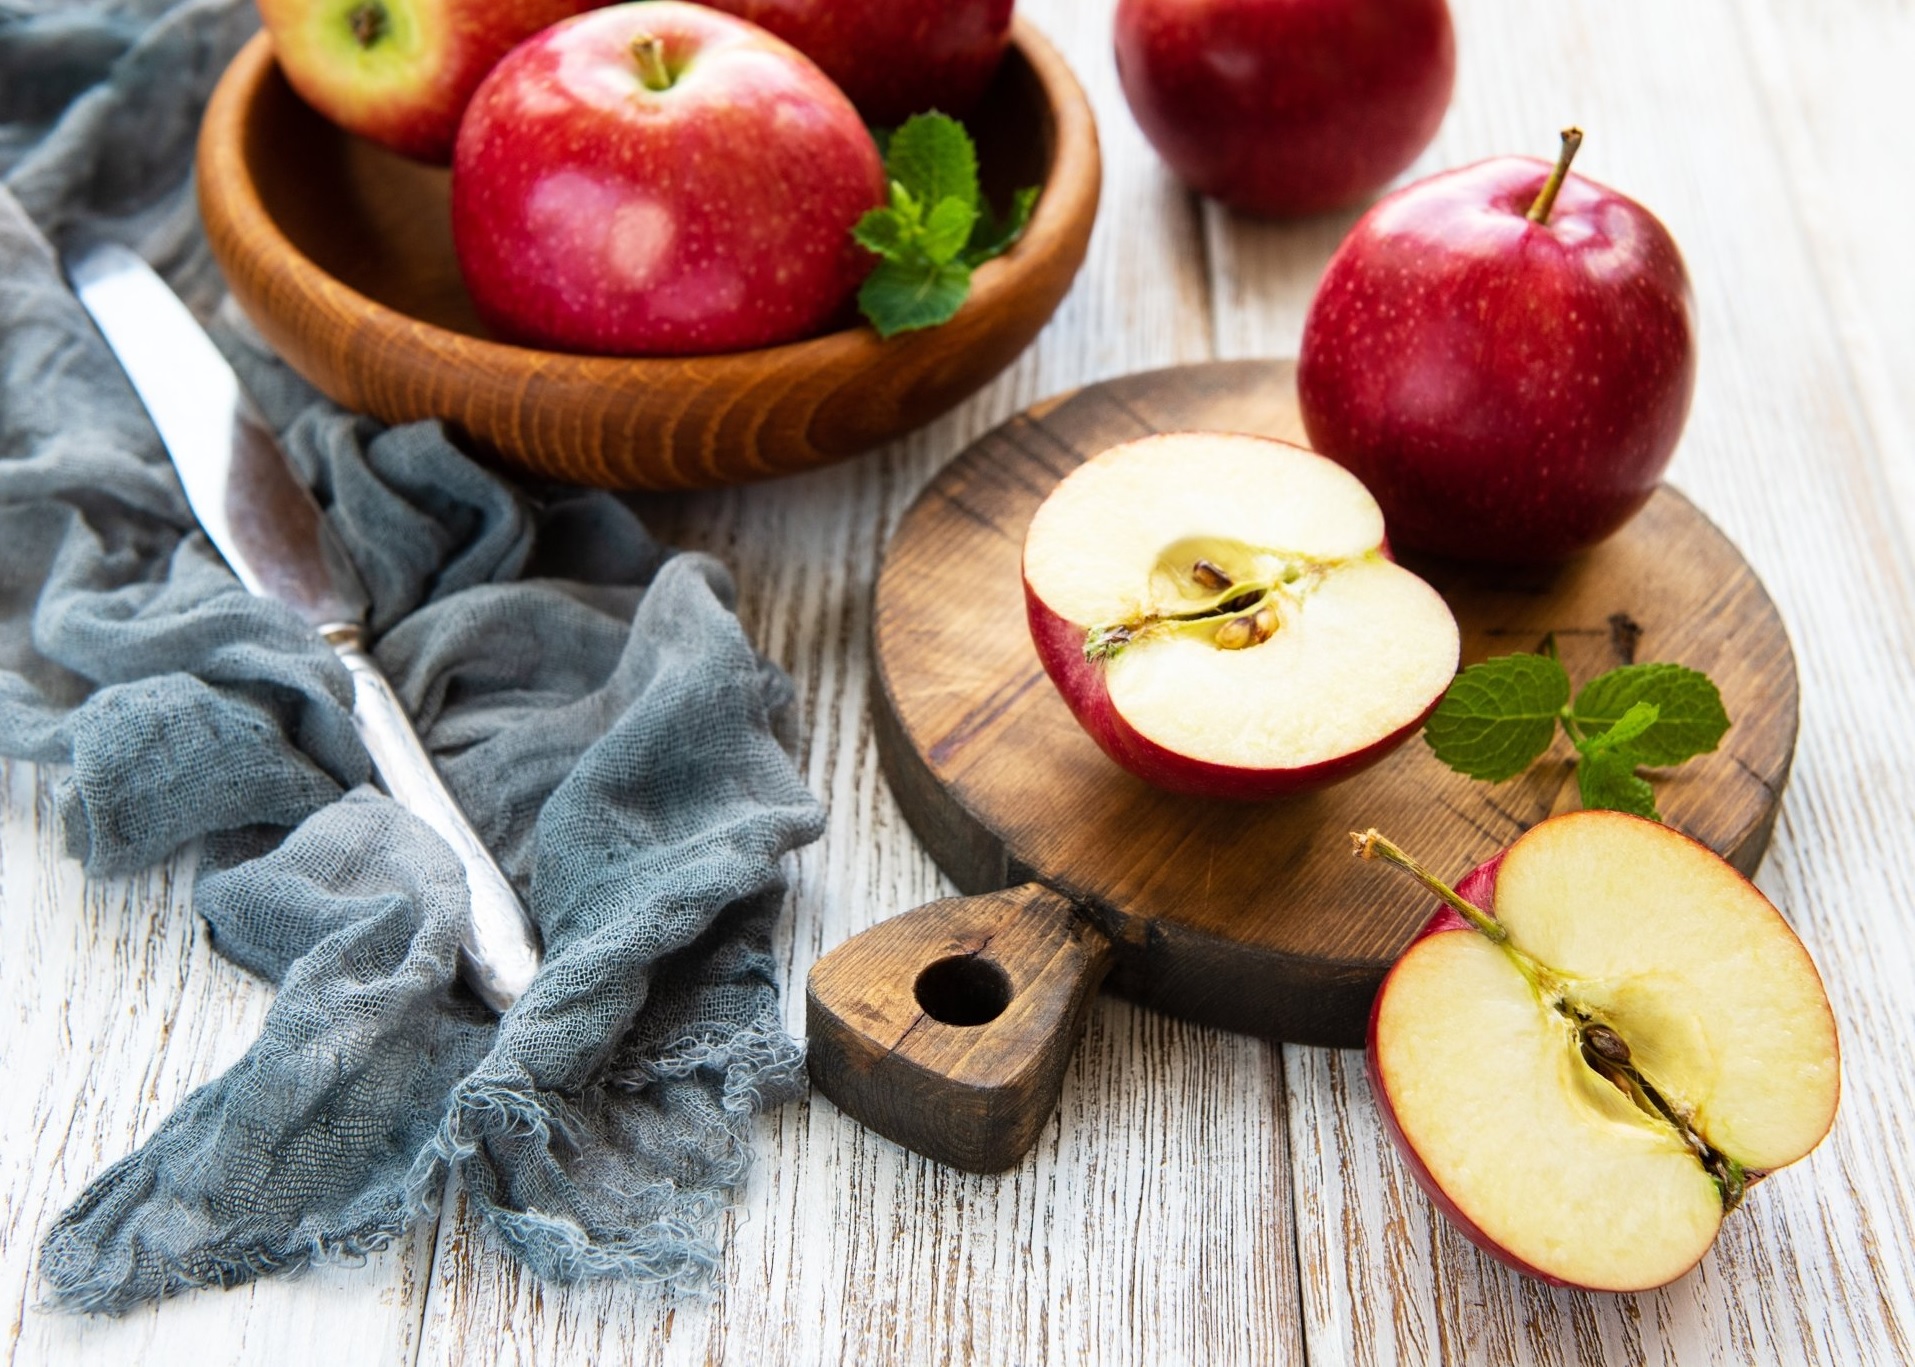 Các nghiên cứu chứng minh, mỗi ngày ăn một quả táo sẽ cung cấp 20% chất xơ cần thiết